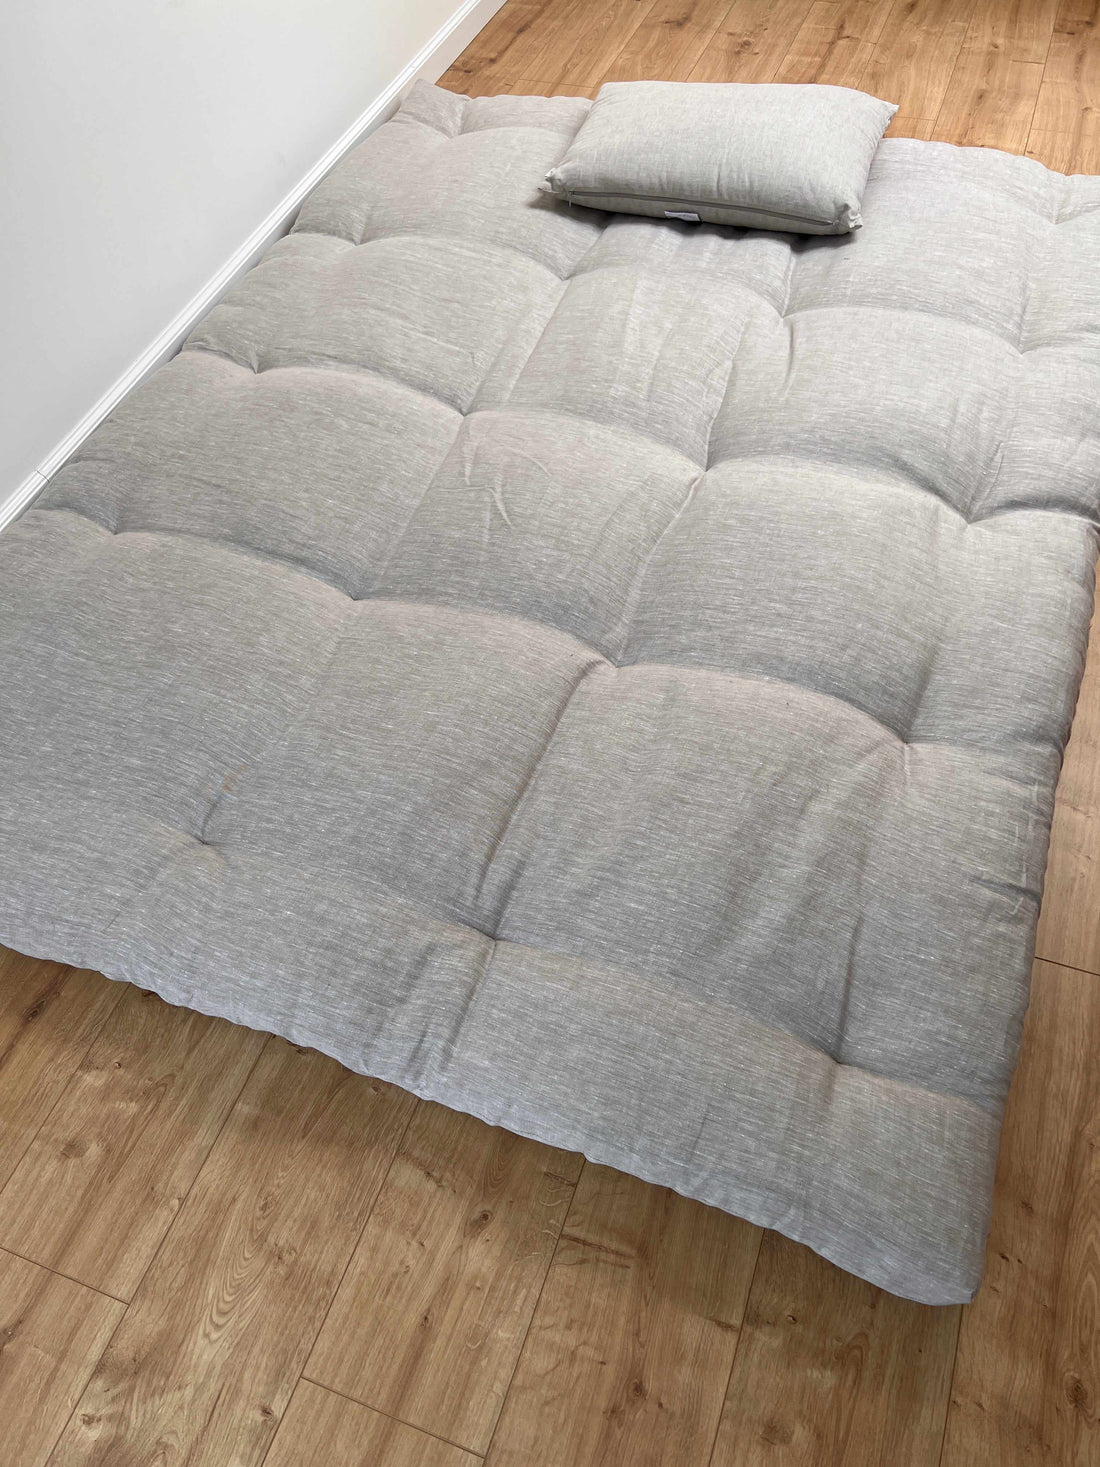 Thick HEMP Floor mat shikibuton mattress Topper futon HEMP fiber filling in natural non-dyed Linen fabric